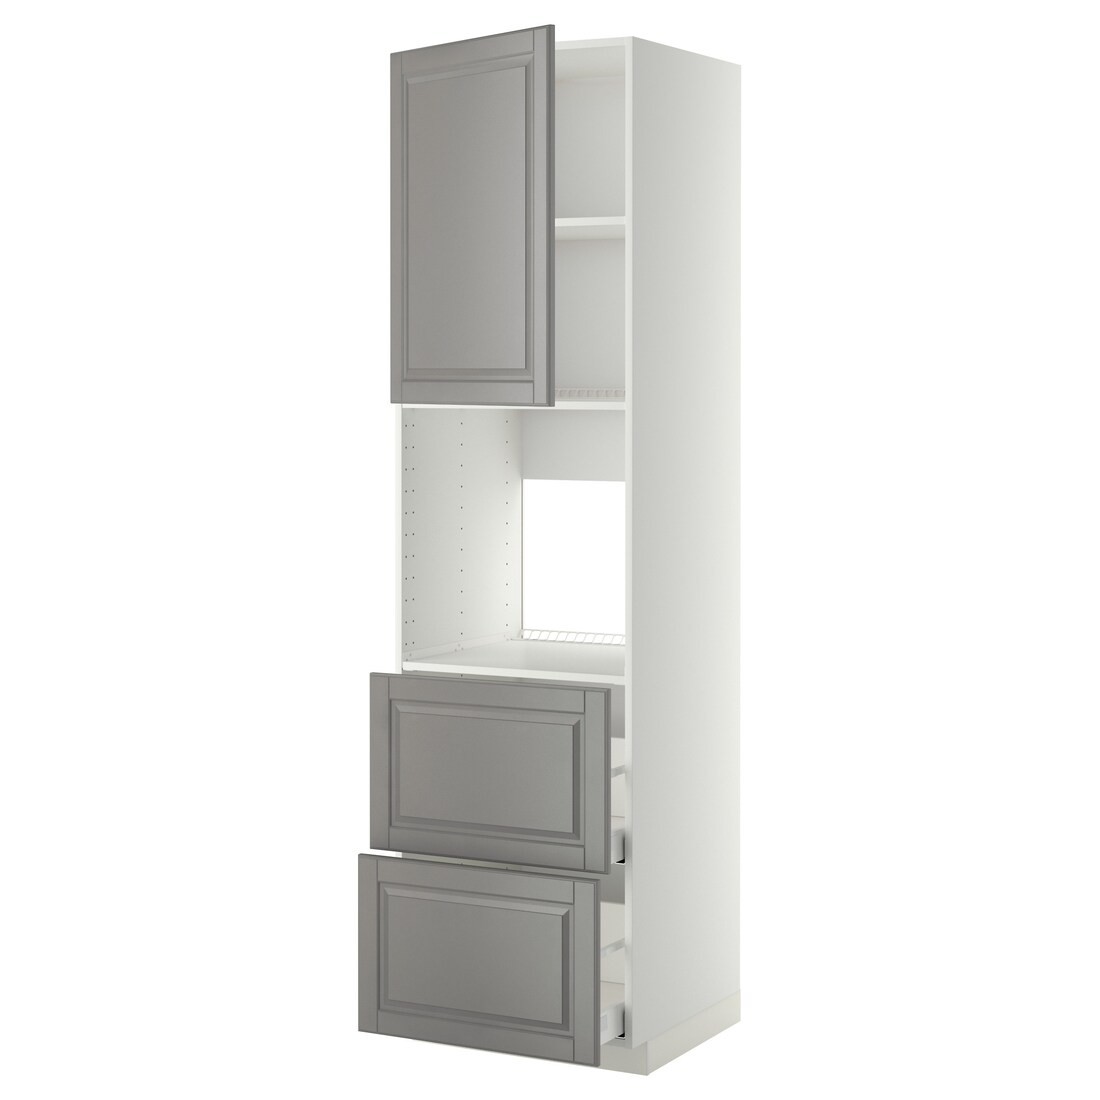 METOD МЕТОД / MAXIMERA МАКСИМЕРА Высокий шкаф для духовки с дверцей / ящиками, белый / Bodbyn серый, 60x60x220 см